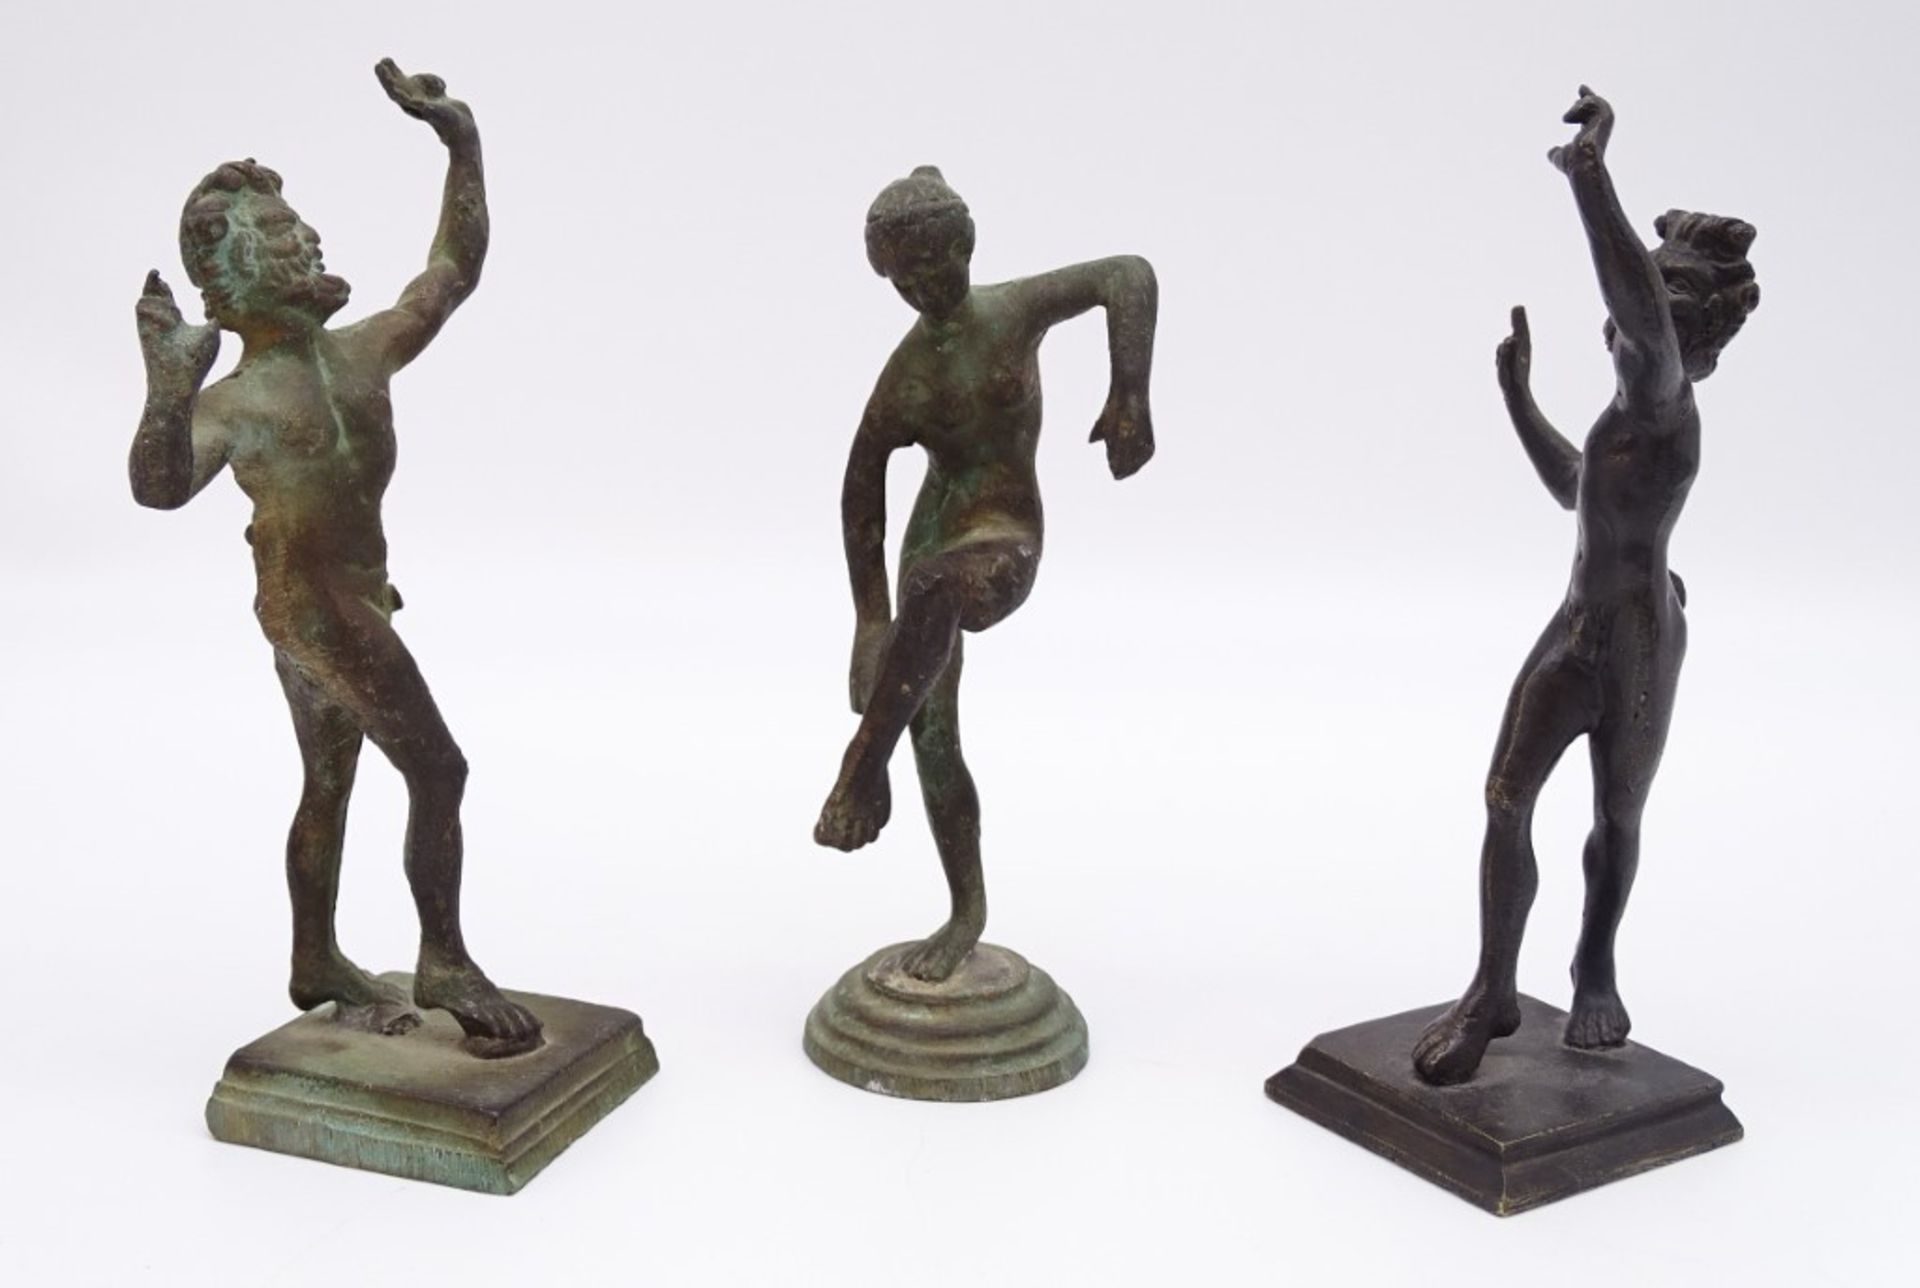 2 x Kopien des Tanzenden Fauns, Casa del Fauno, Pompeij, 1 x Kopie der Venus im Bad, Slg. Barsanti, - Bild 7 aus 8